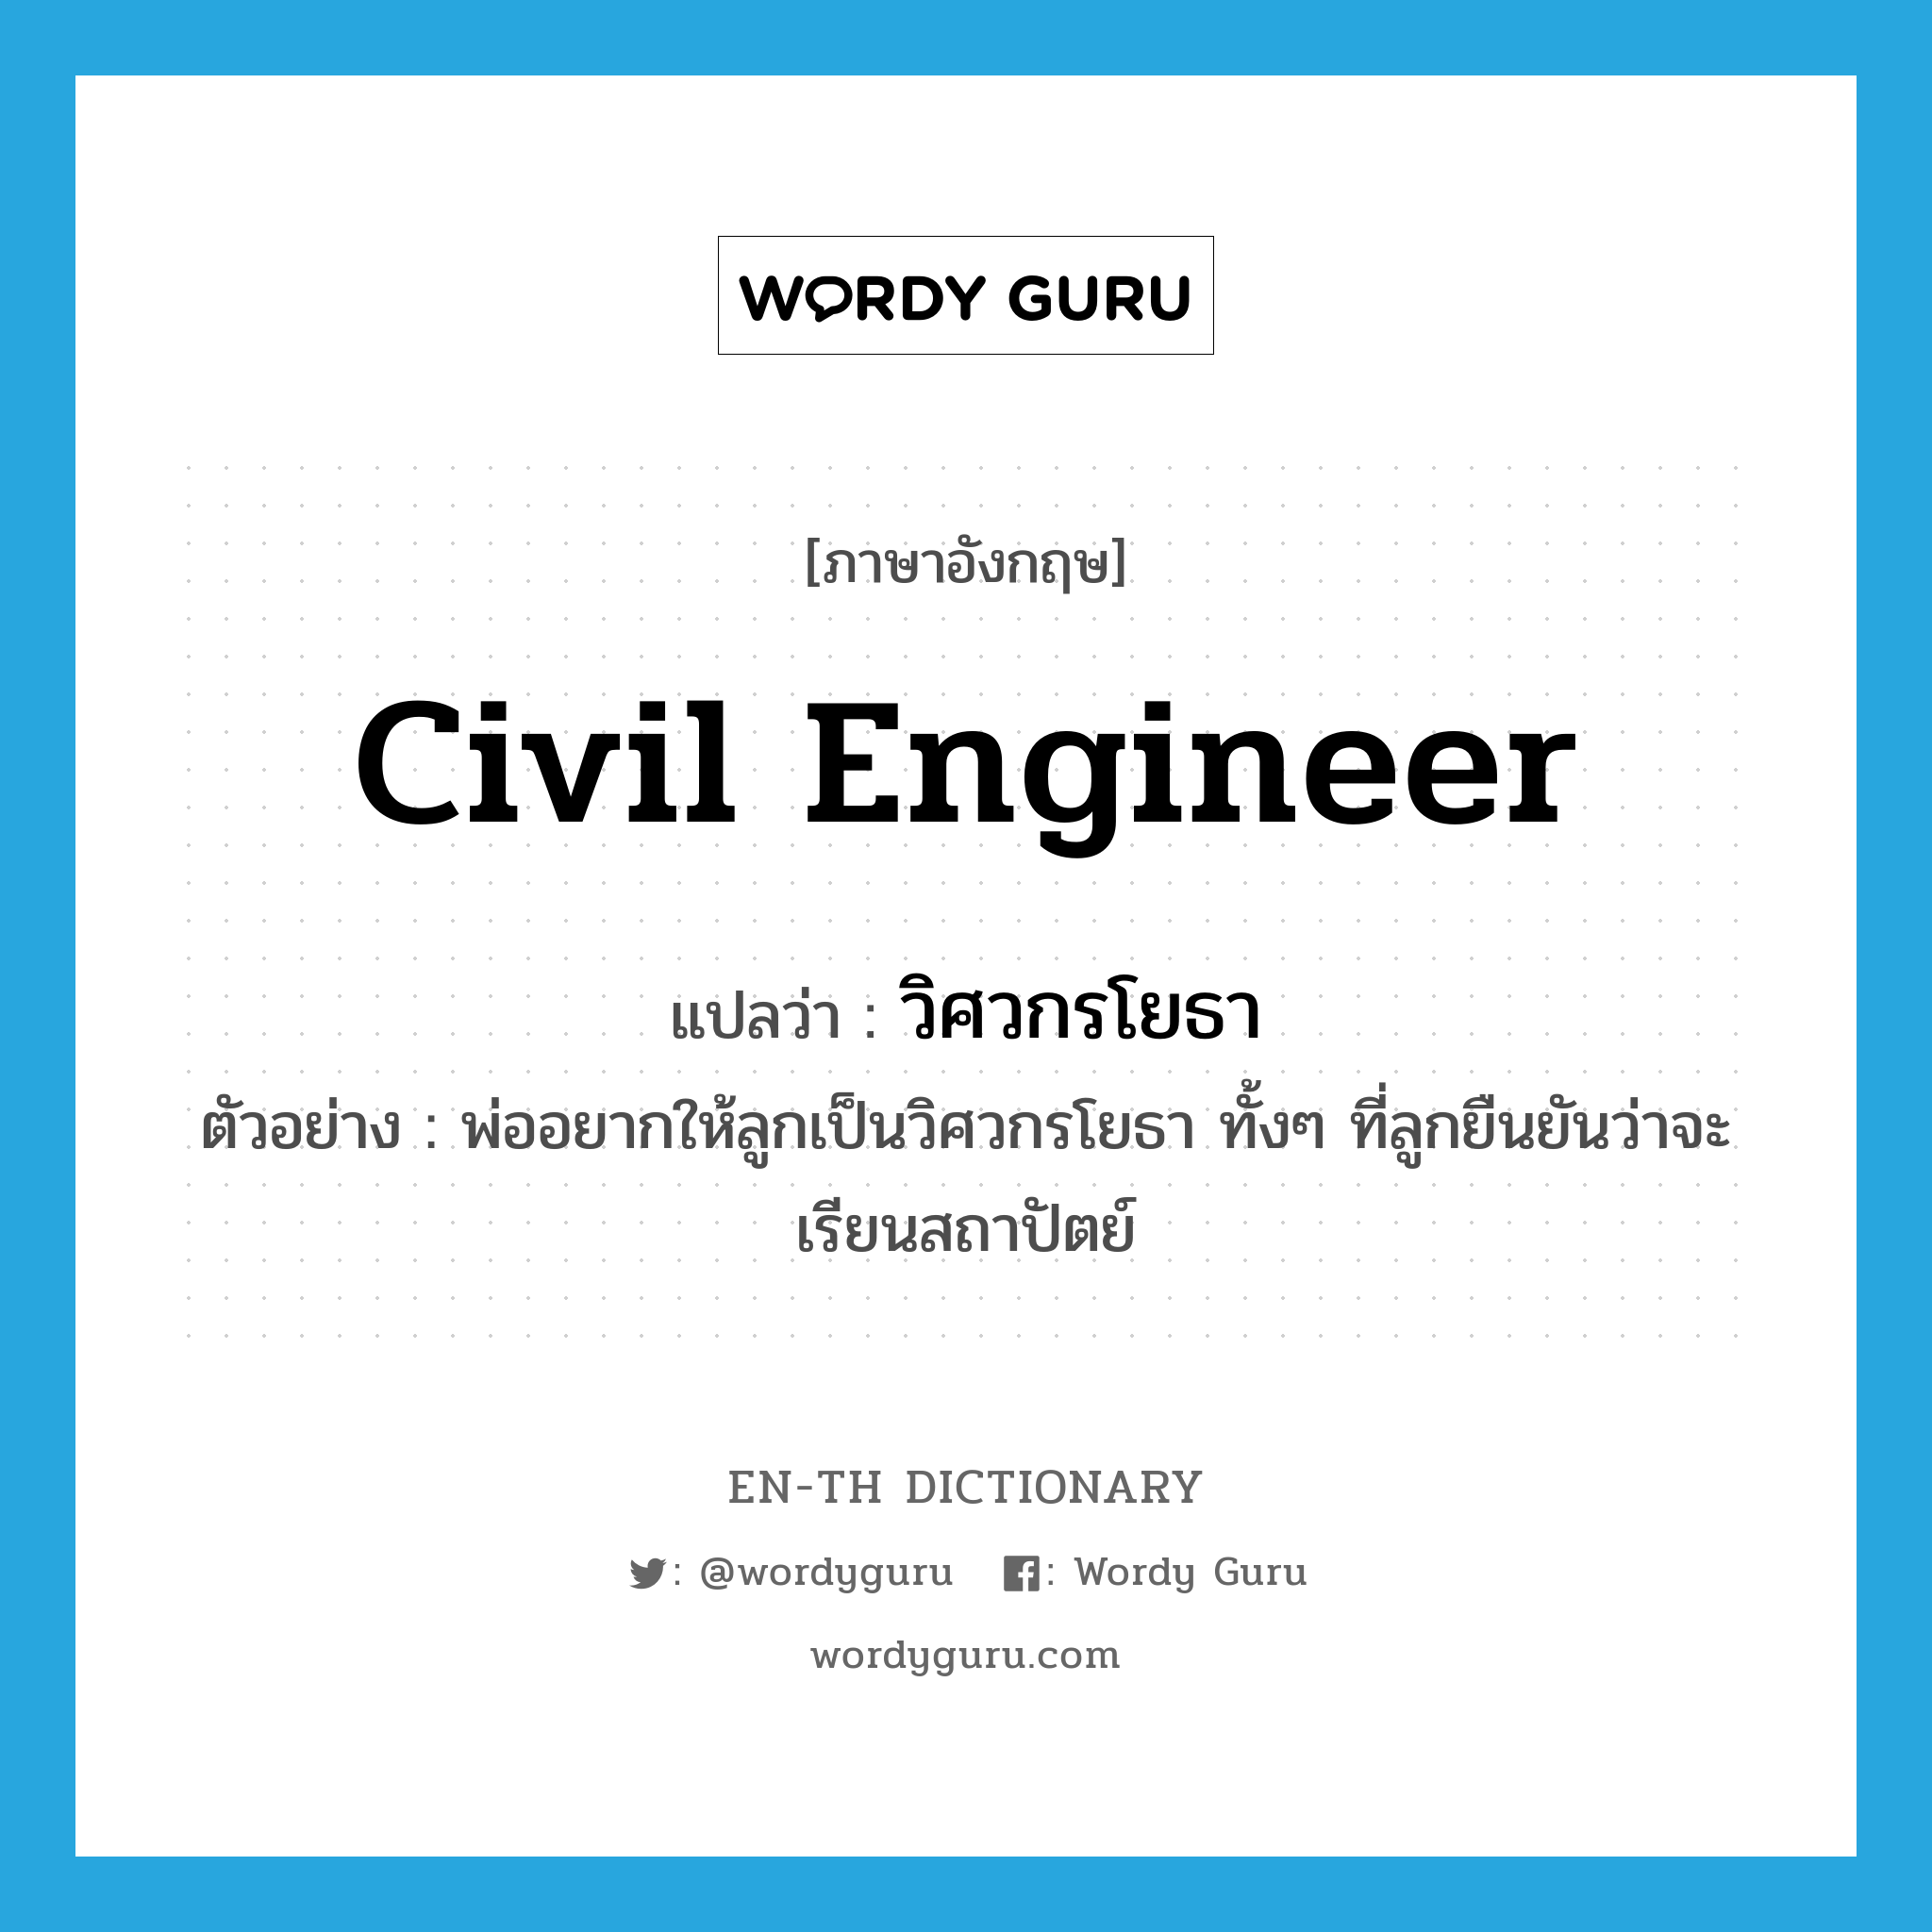 civil engineer แปลว่า?, คำศัพท์ภาษาอังกฤษ civil engineer แปลว่า วิศวกรโยธา ประเภท N ตัวอย่าง พ่ออยากให้ลูกเป็นวิศวกรโยธา ทั้งๆ ที่ลูกยืนยันว่าจะเรียนสถาปัตย์ หมวด N